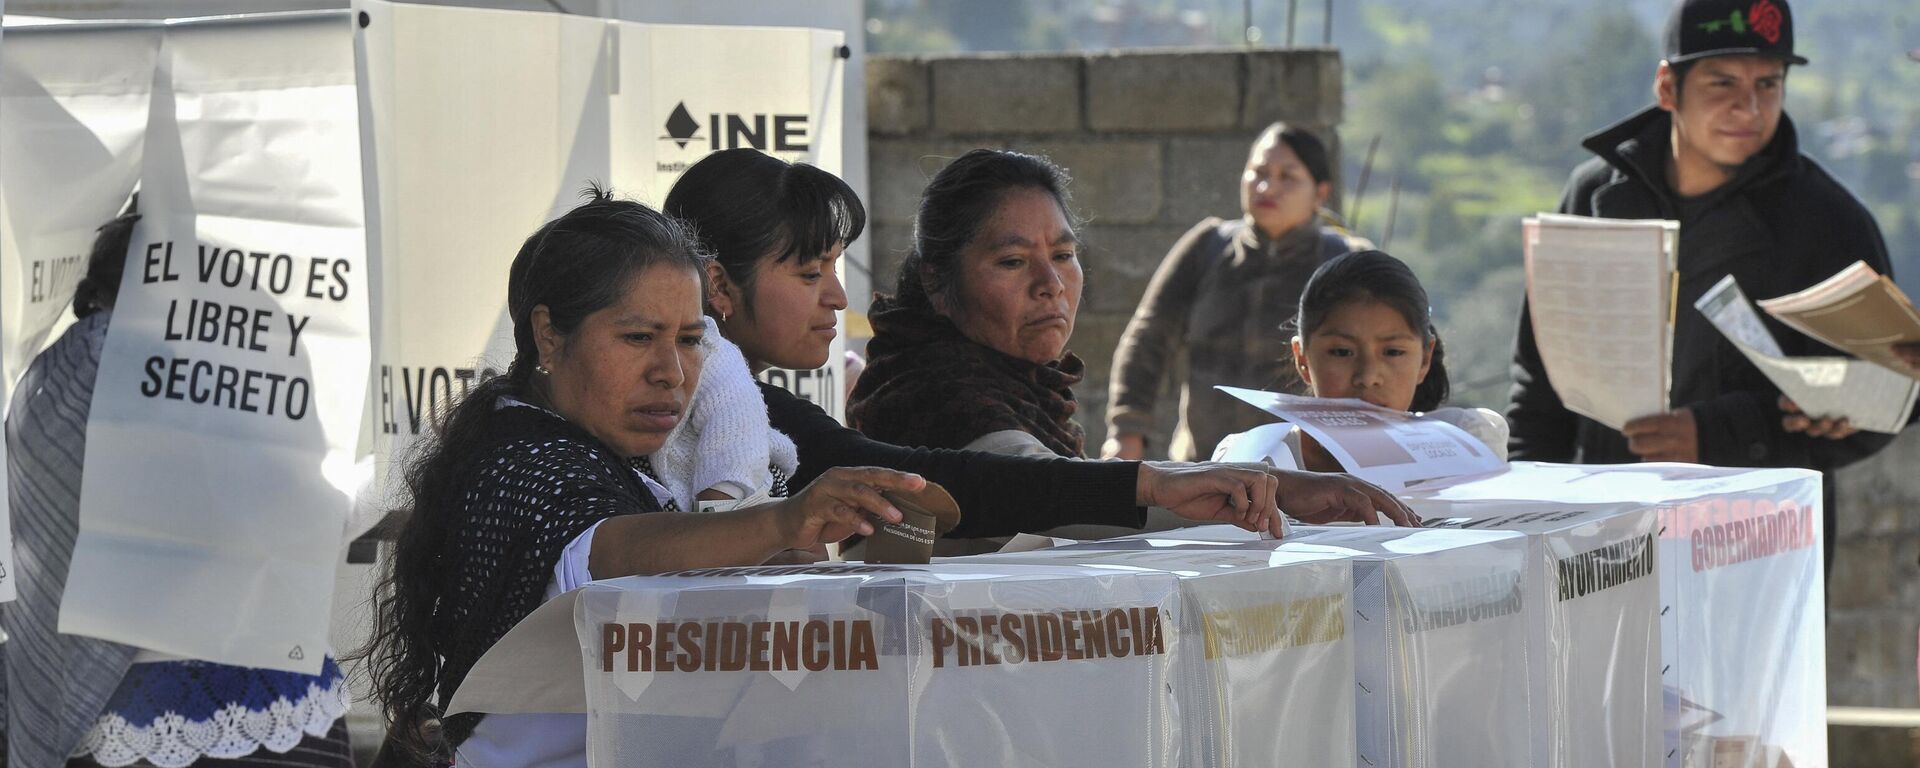 Las elecciones presidenciales en México se llevarán a cabo a mediados de 2024. - Sputnik Mundo, 1920, 01.03.2024